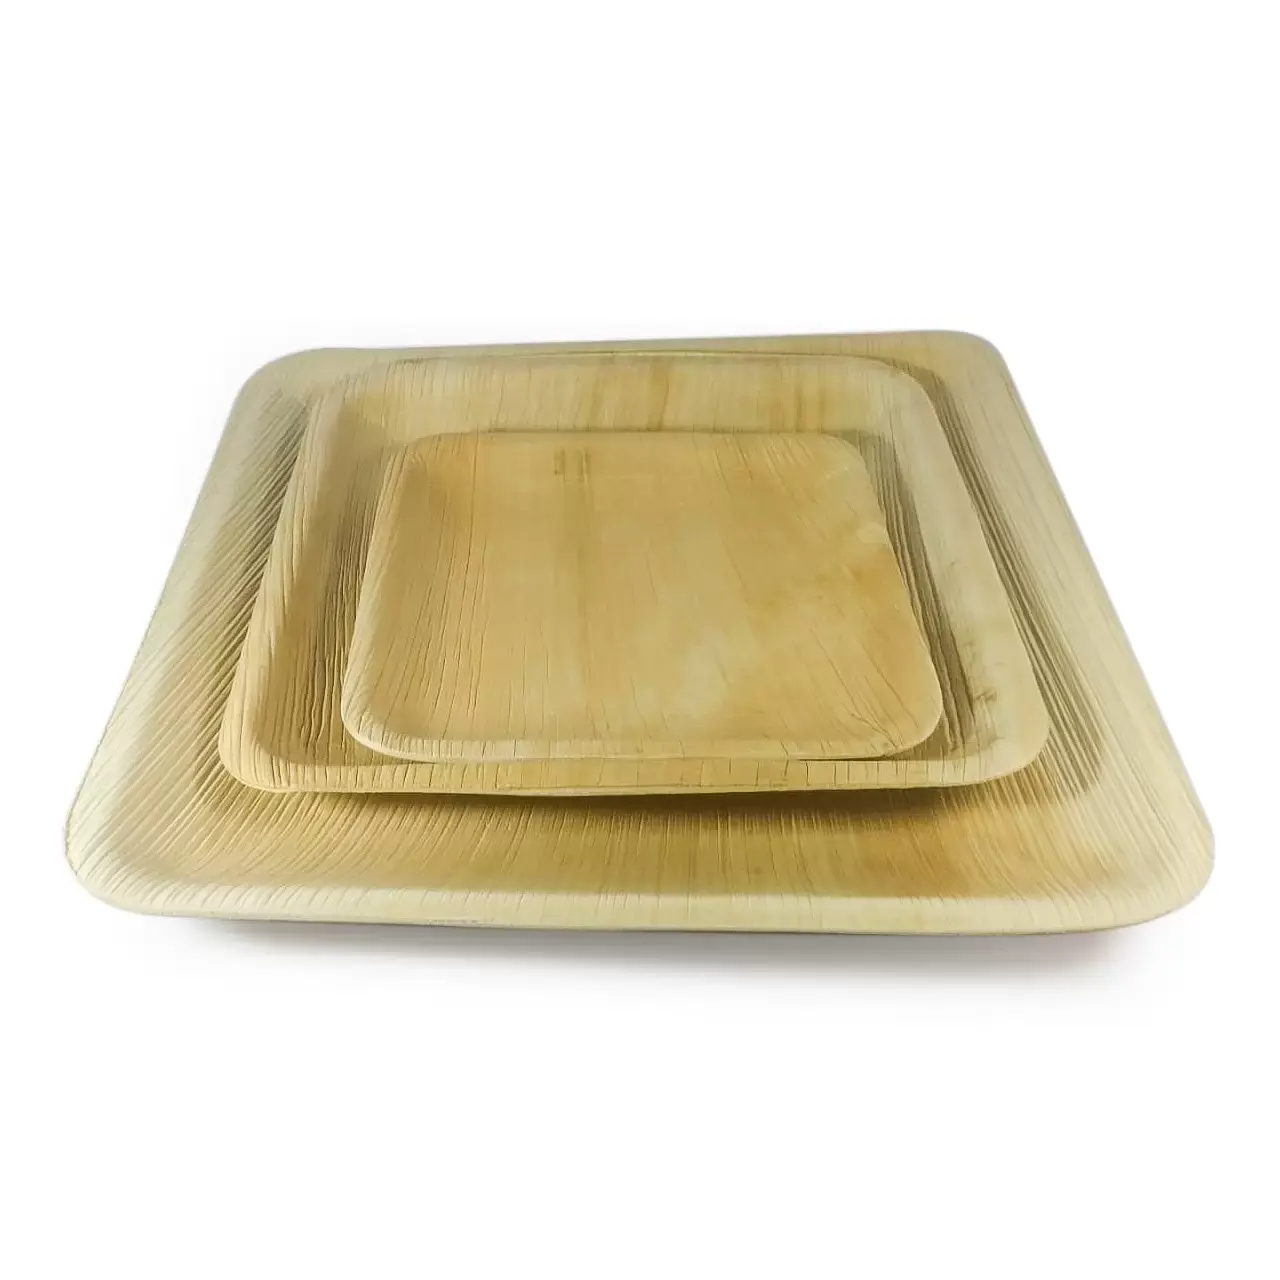 उच्चतम गुणवत्ता भोजन Tableware उपयोग और फेंक प्लेटें कटोरे ट्रे और थाली सुपारी हथेली Biodegradable के लिए निर्यात